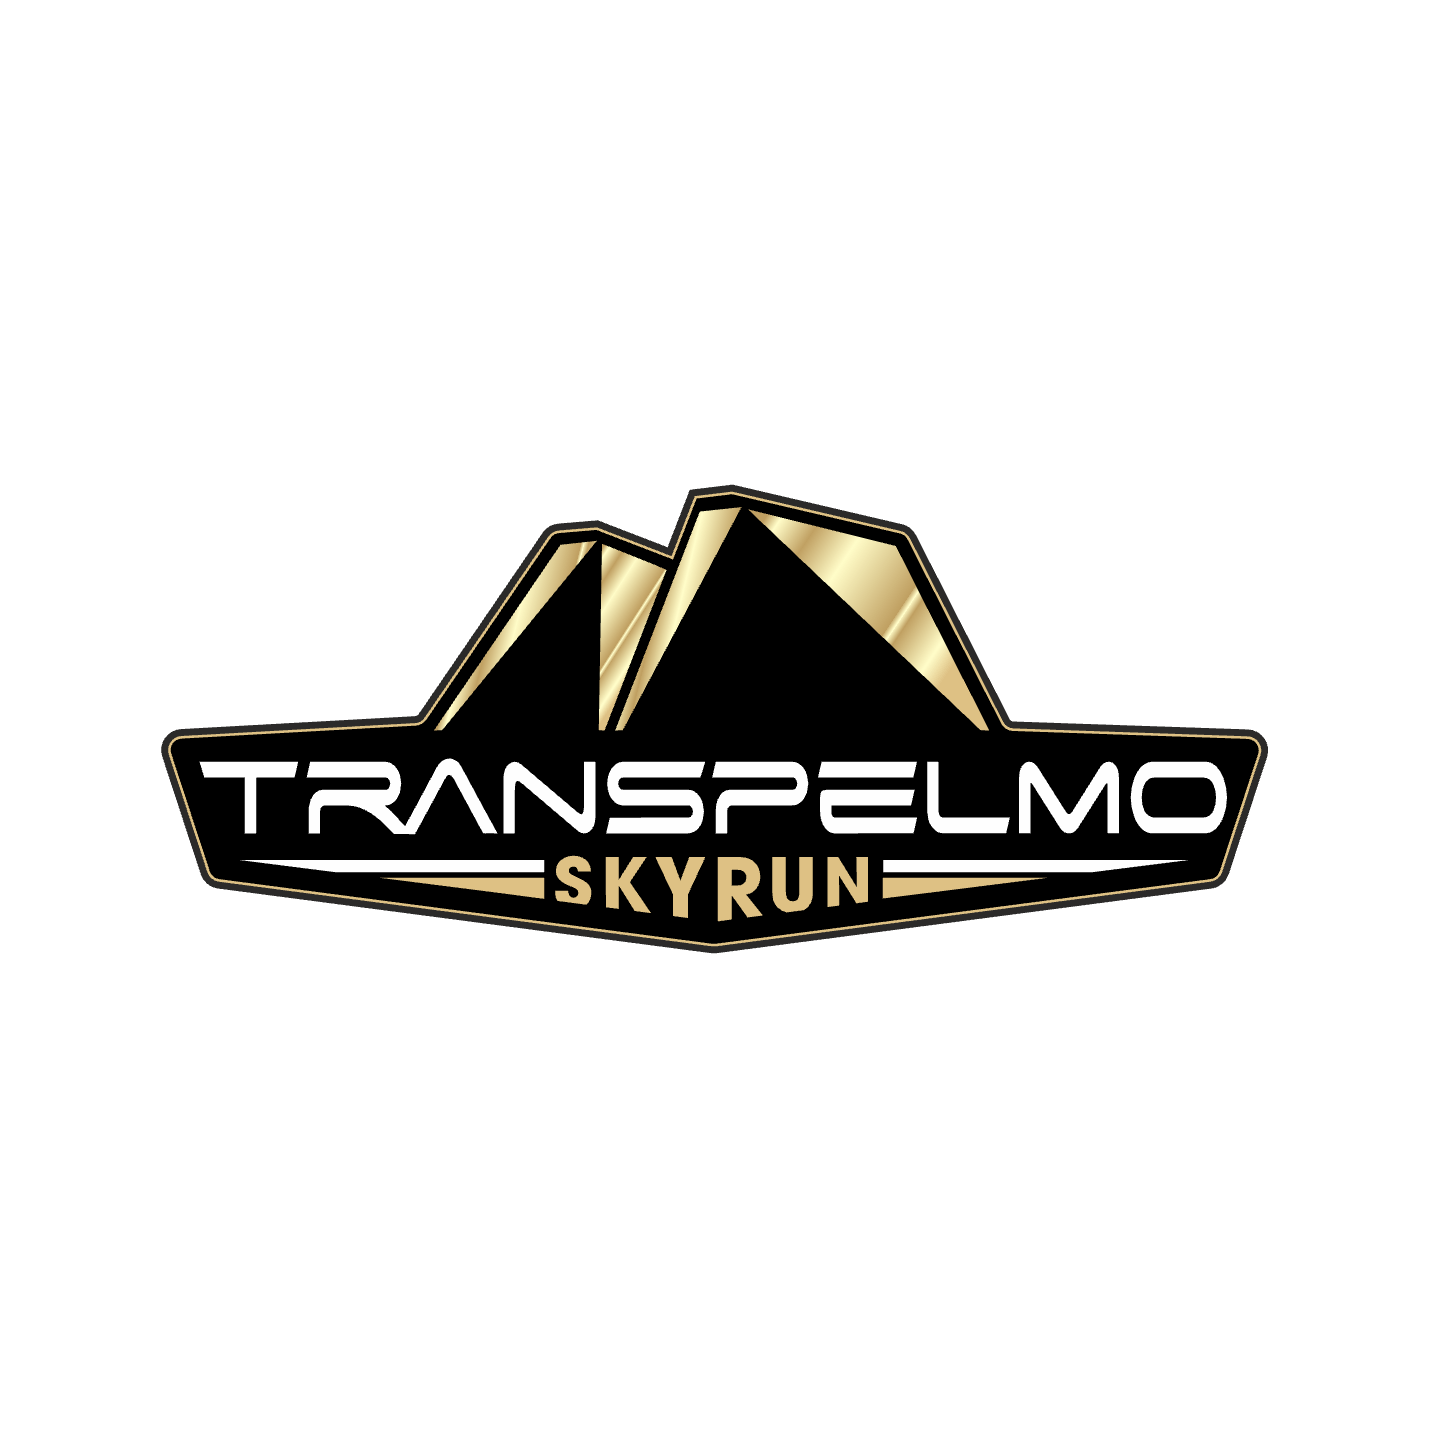 Logo-Transpelmo-Skyrace